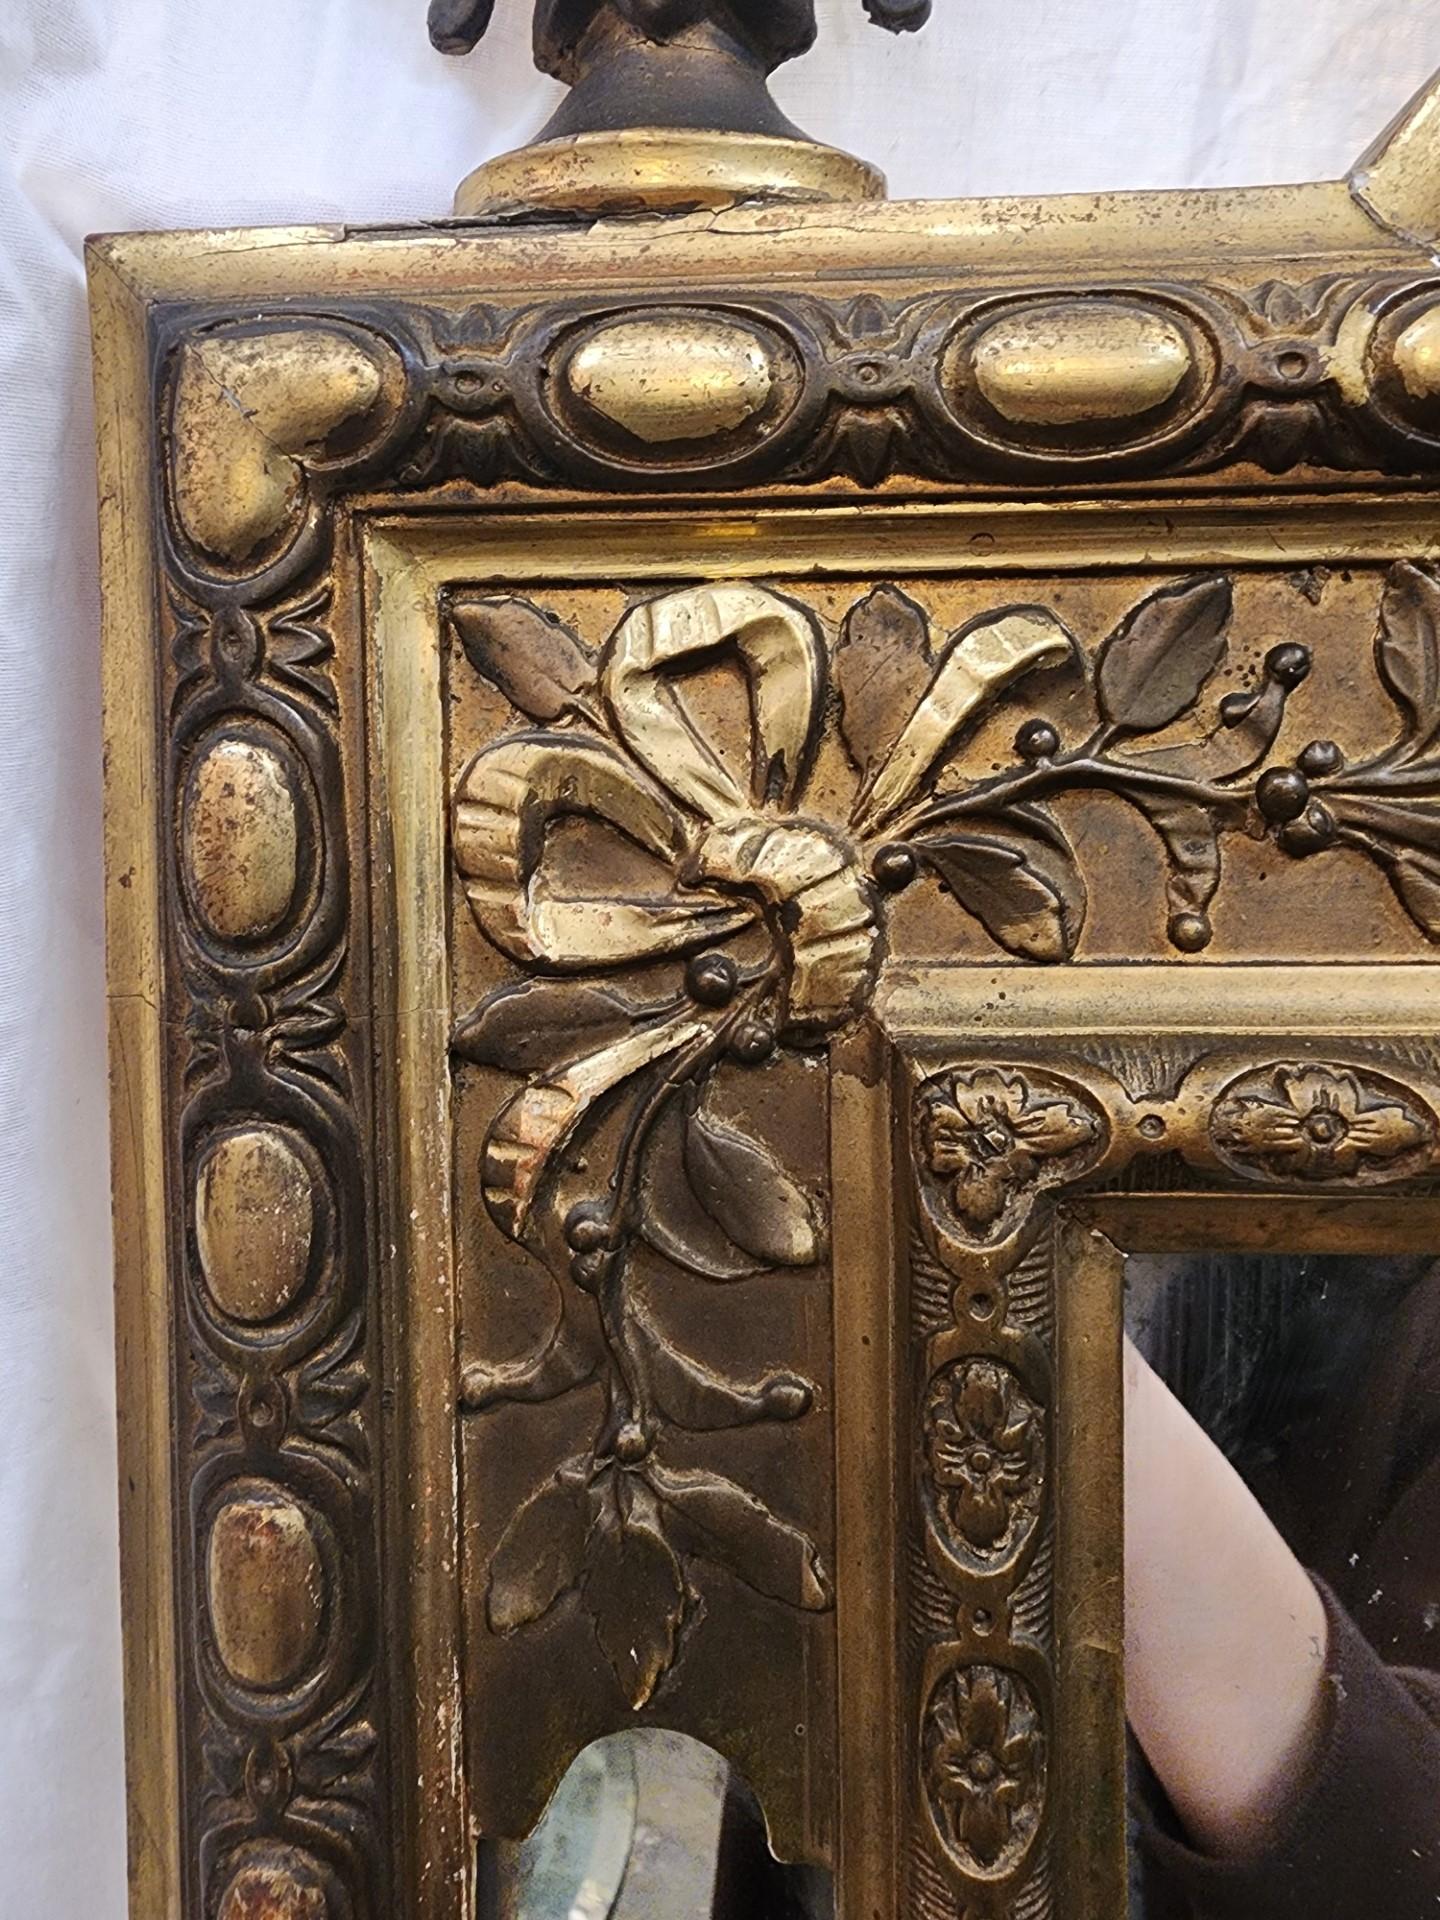 Magnifique miroir palatial français de style Louis XV peint en or et doré, avec de belles œuvres d'art le long du cadre. 